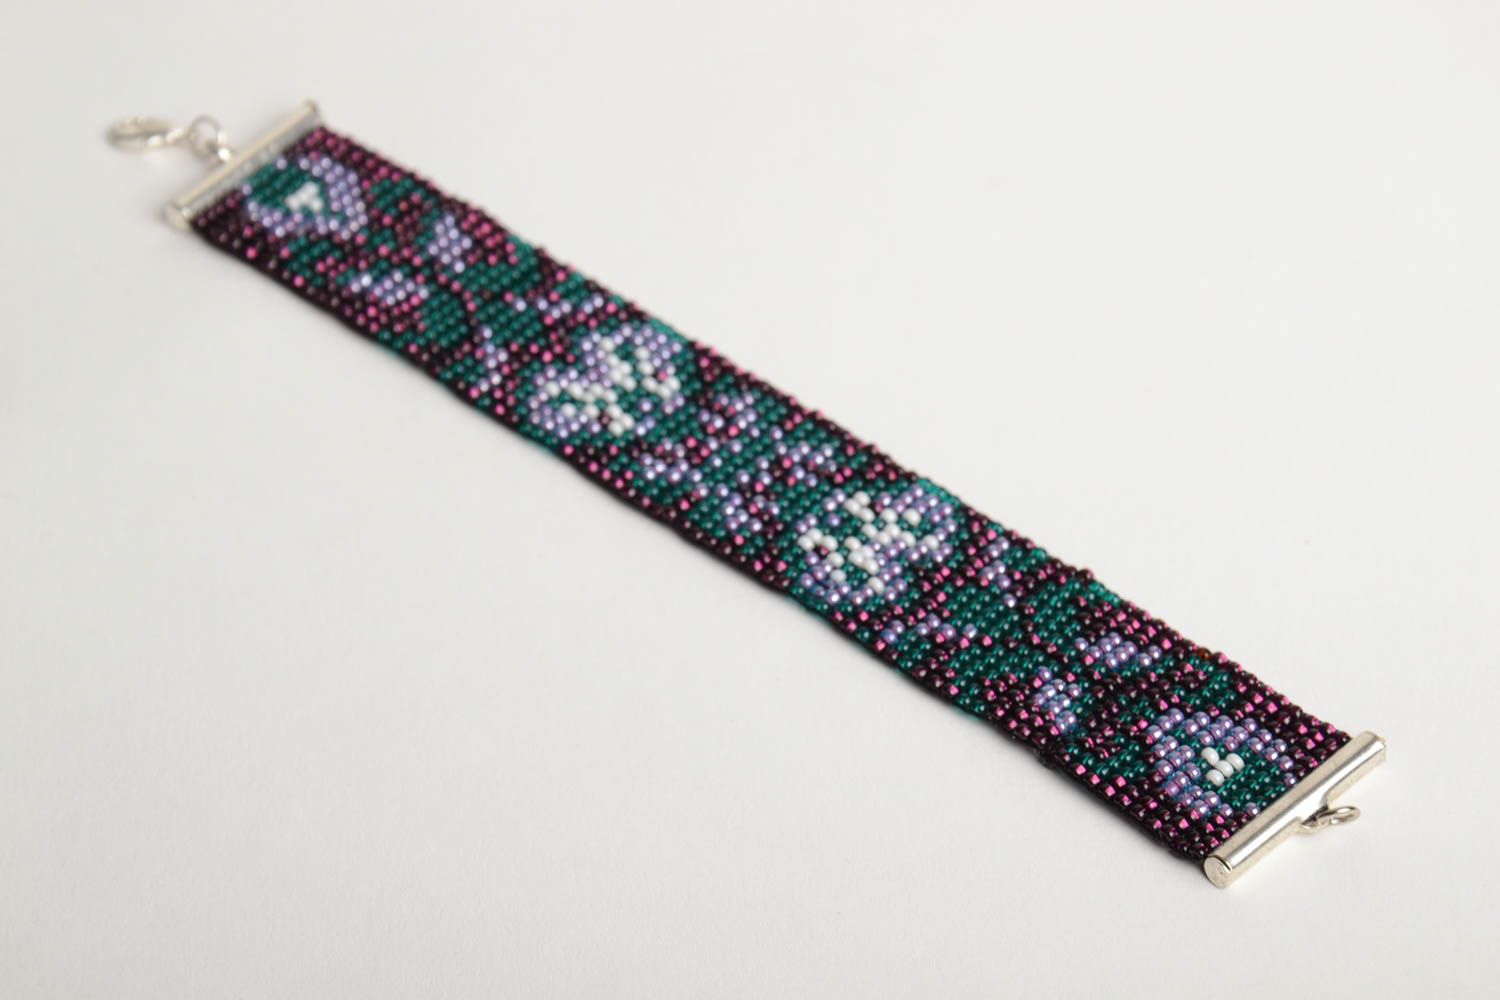 Бисерный браслет широкий хэнд мэйд на цепочке темный с растительными мотивами фото 4